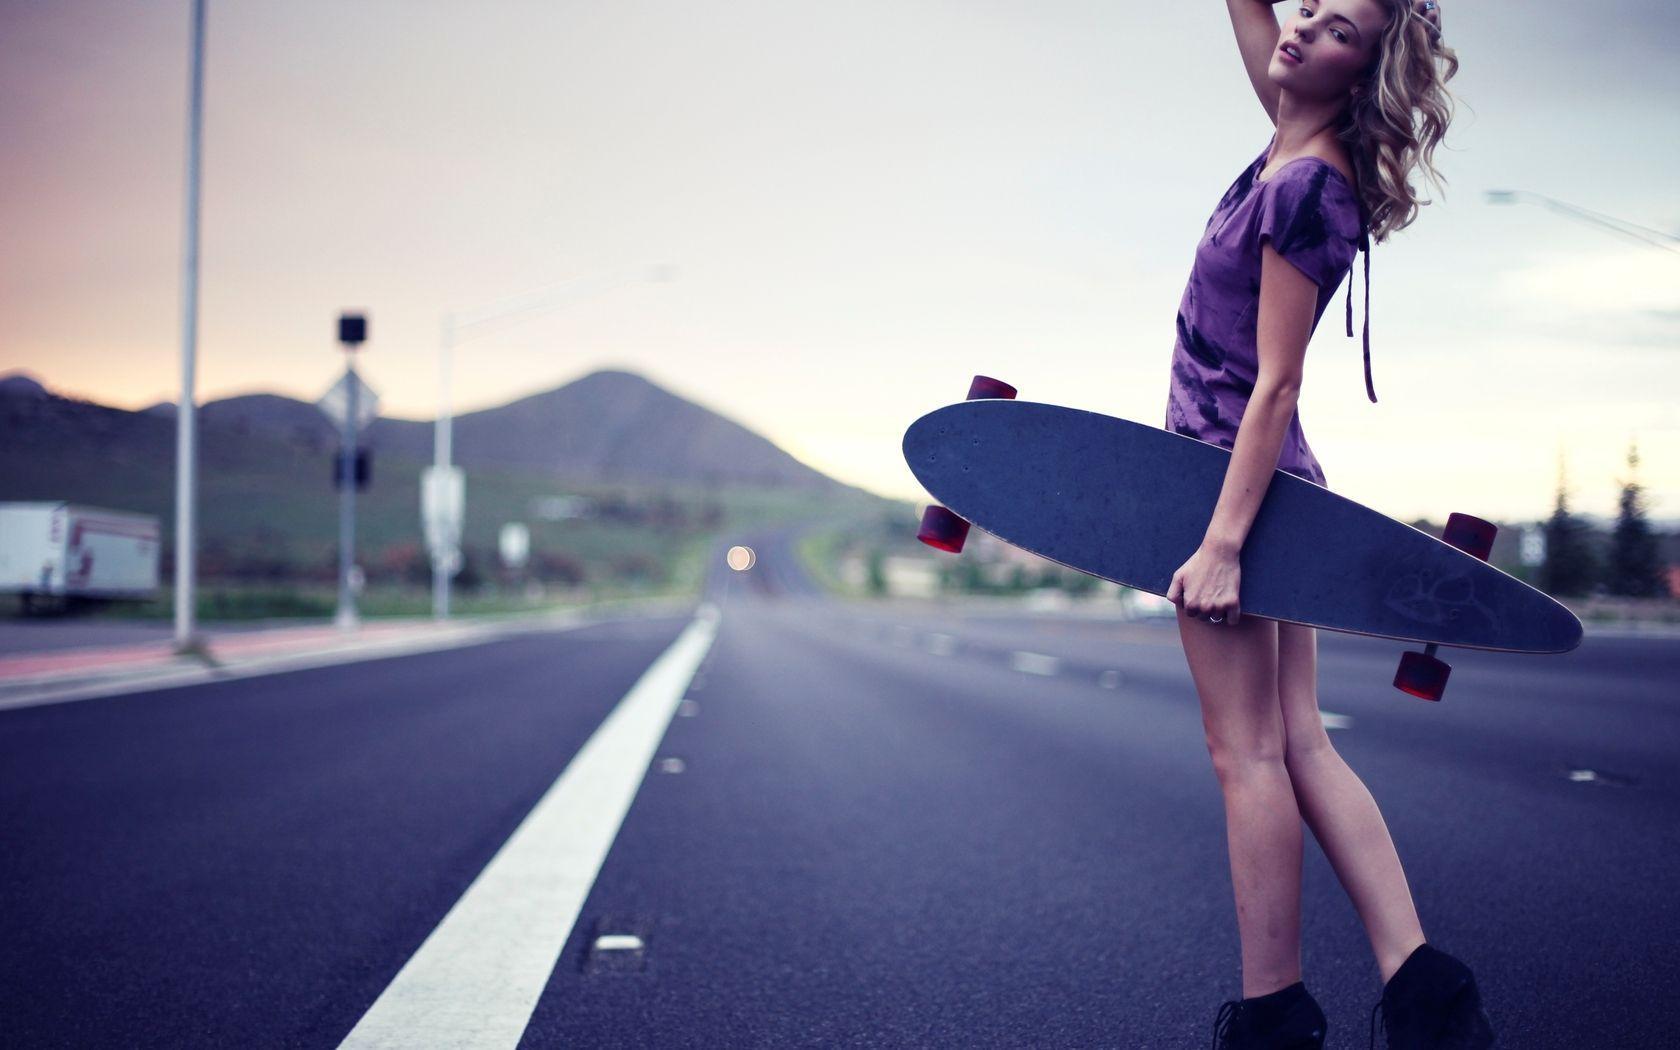 girl skate wallpaper